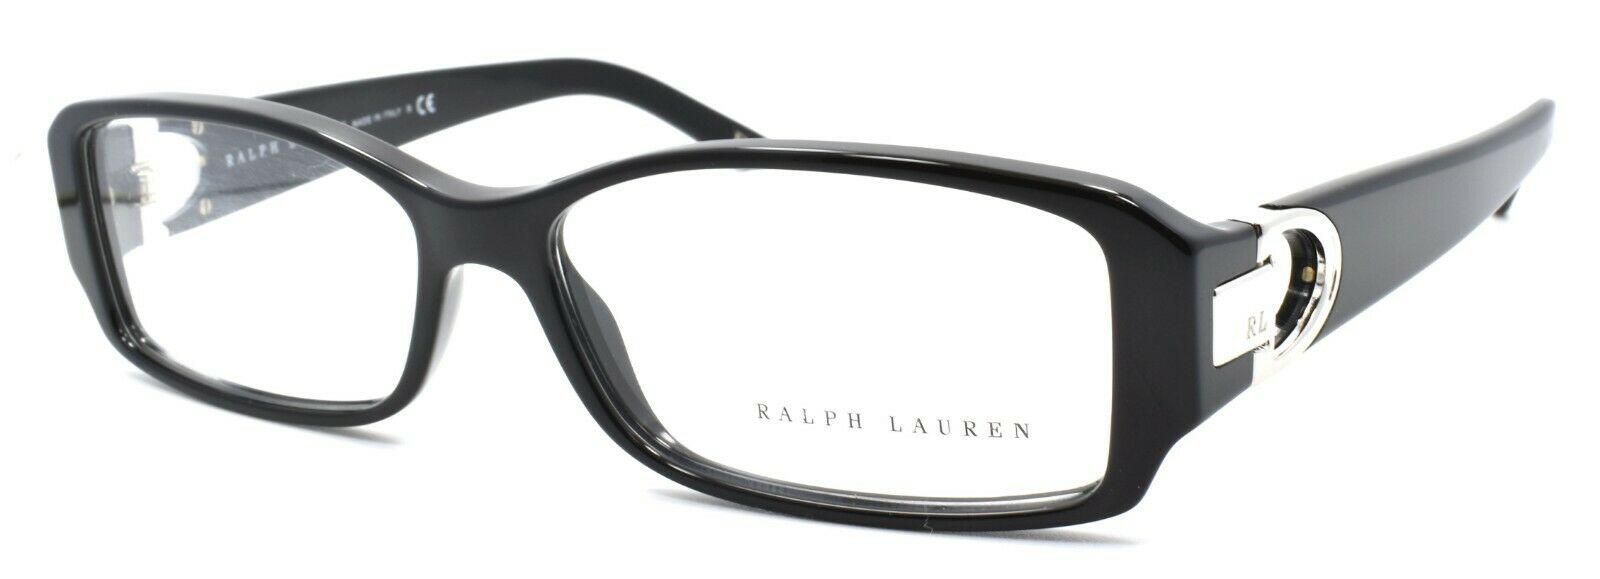 1-Ralph Lauren RL6051 5001 Women's Eyeglasses Frames 55-16-135 Black ITALY-713132311110-IKSpecs